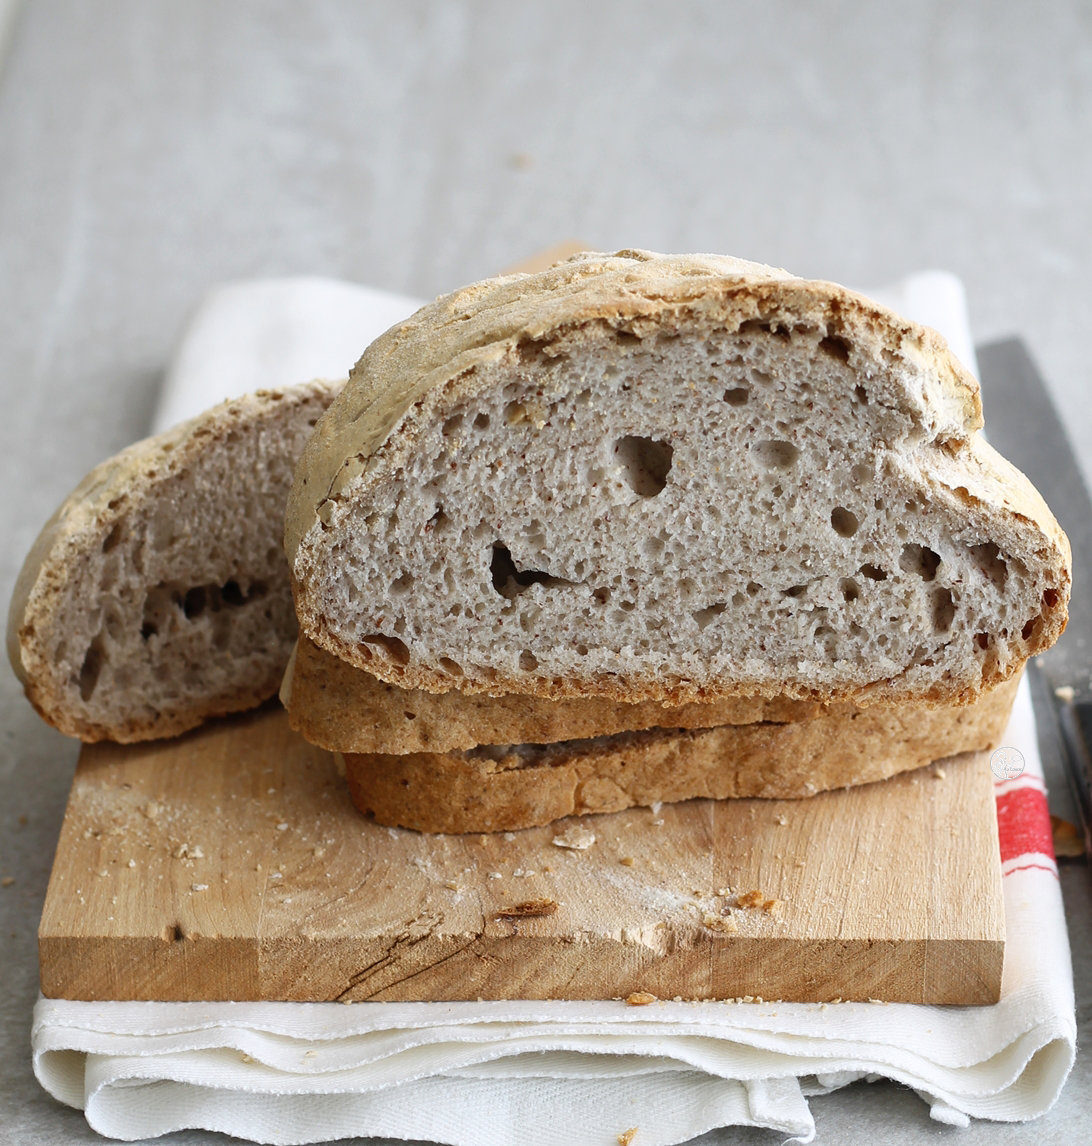 Pane senza glutine ai semi di lino - La Cassata Celiaca